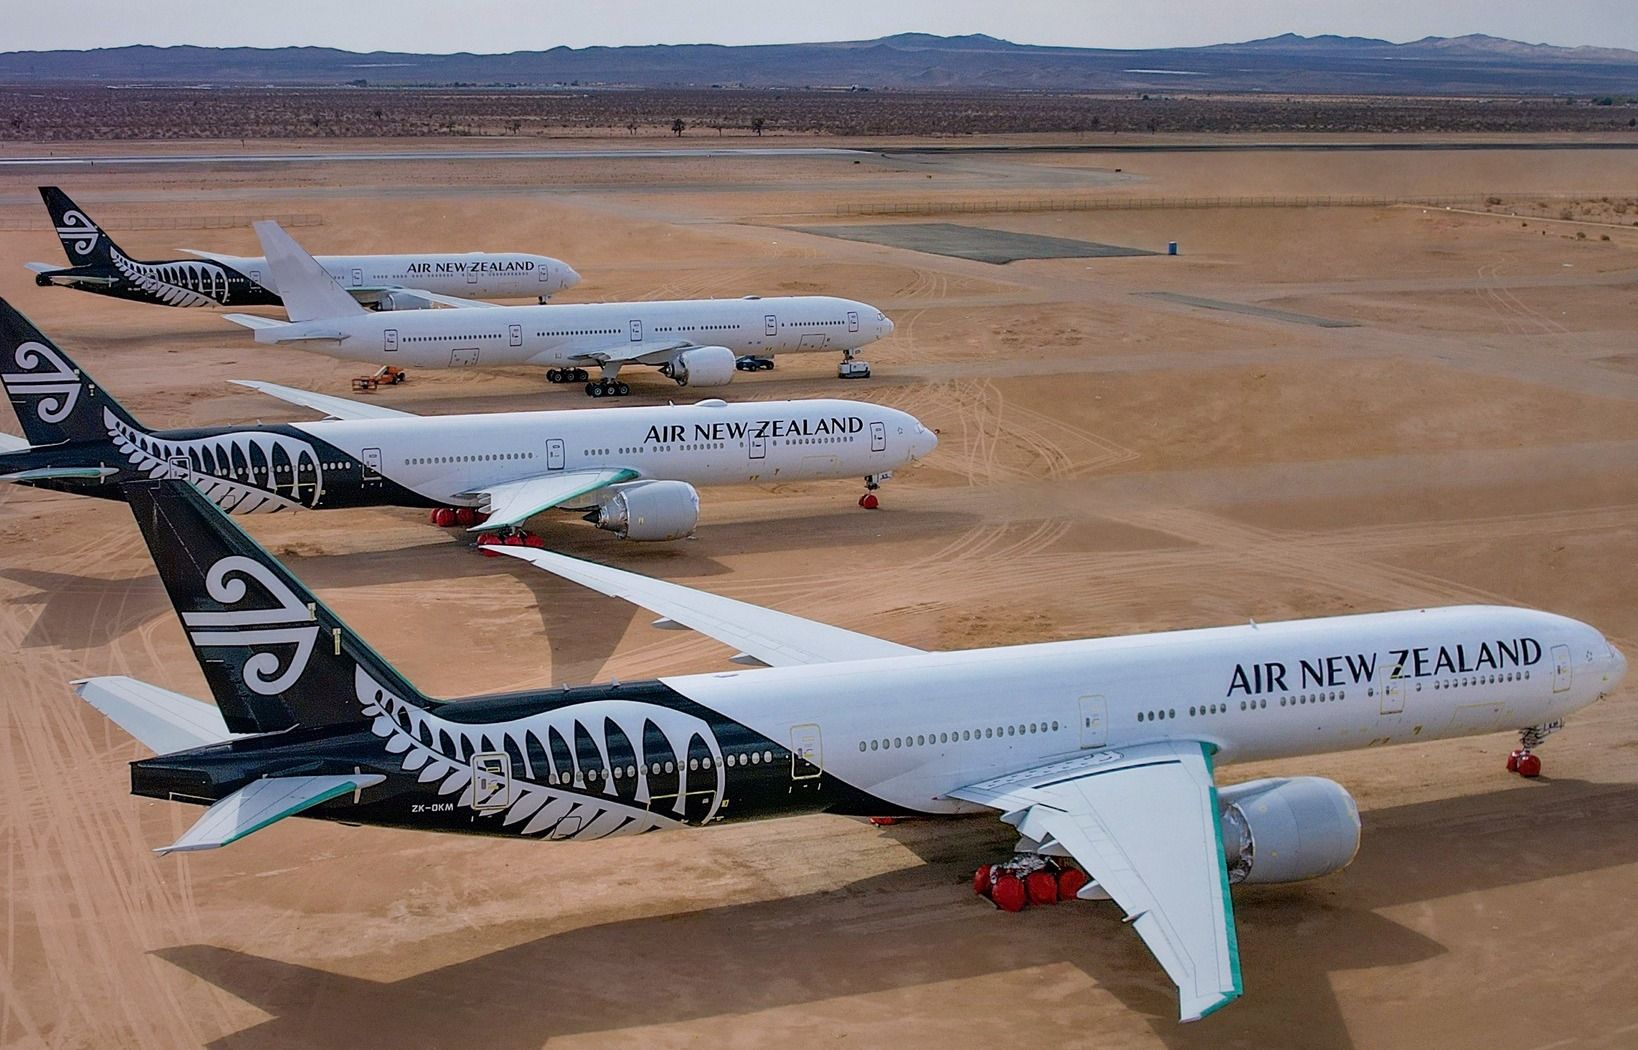 Air New Zealand 777-300ER in desert